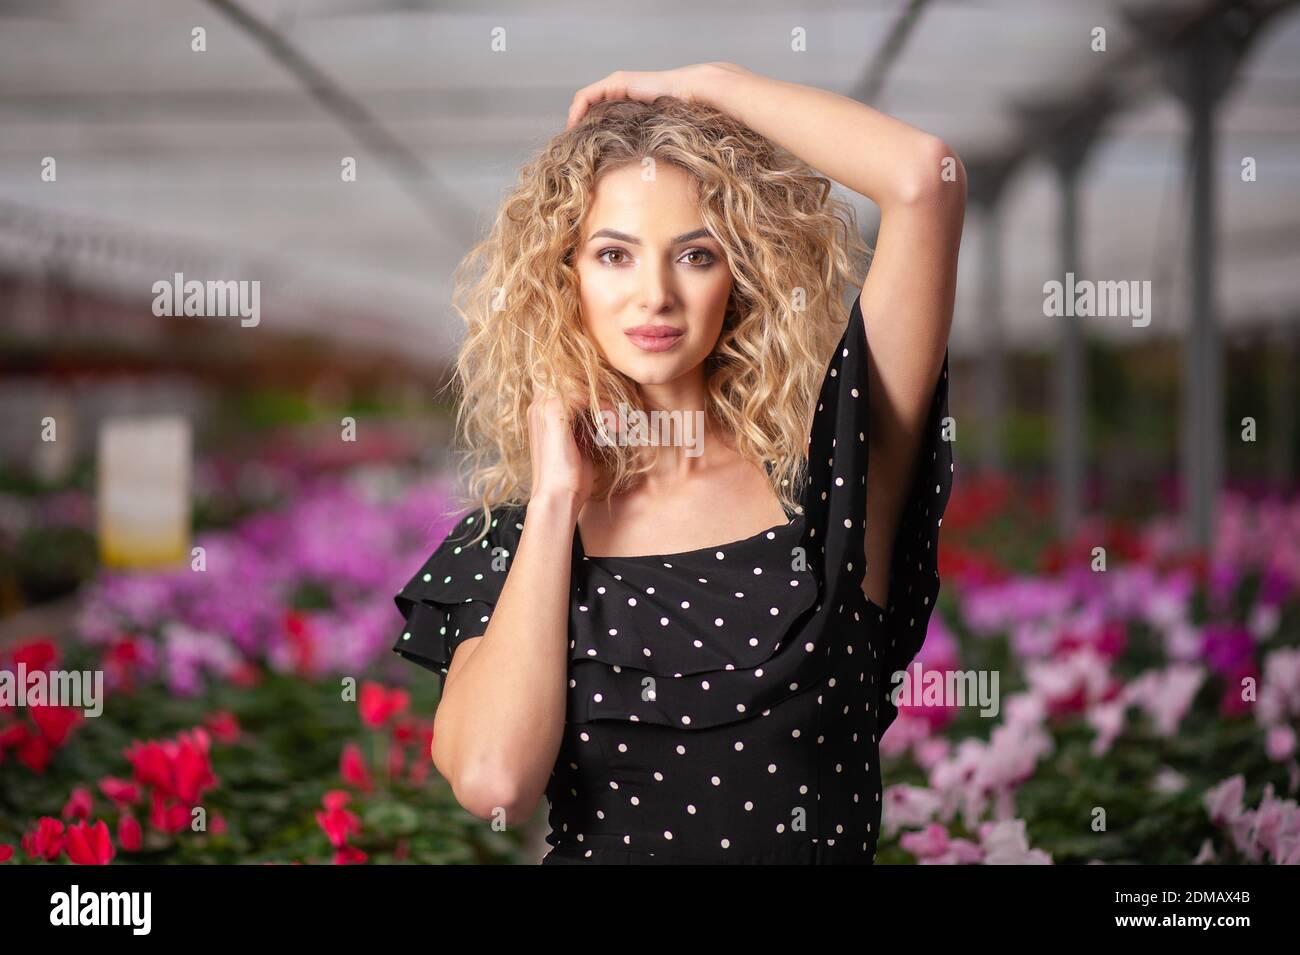 giovane bella ragazza si leva in piedi in un arrangiamento di fiori tra i fiori e guarda nella fotocamera Foto Stock